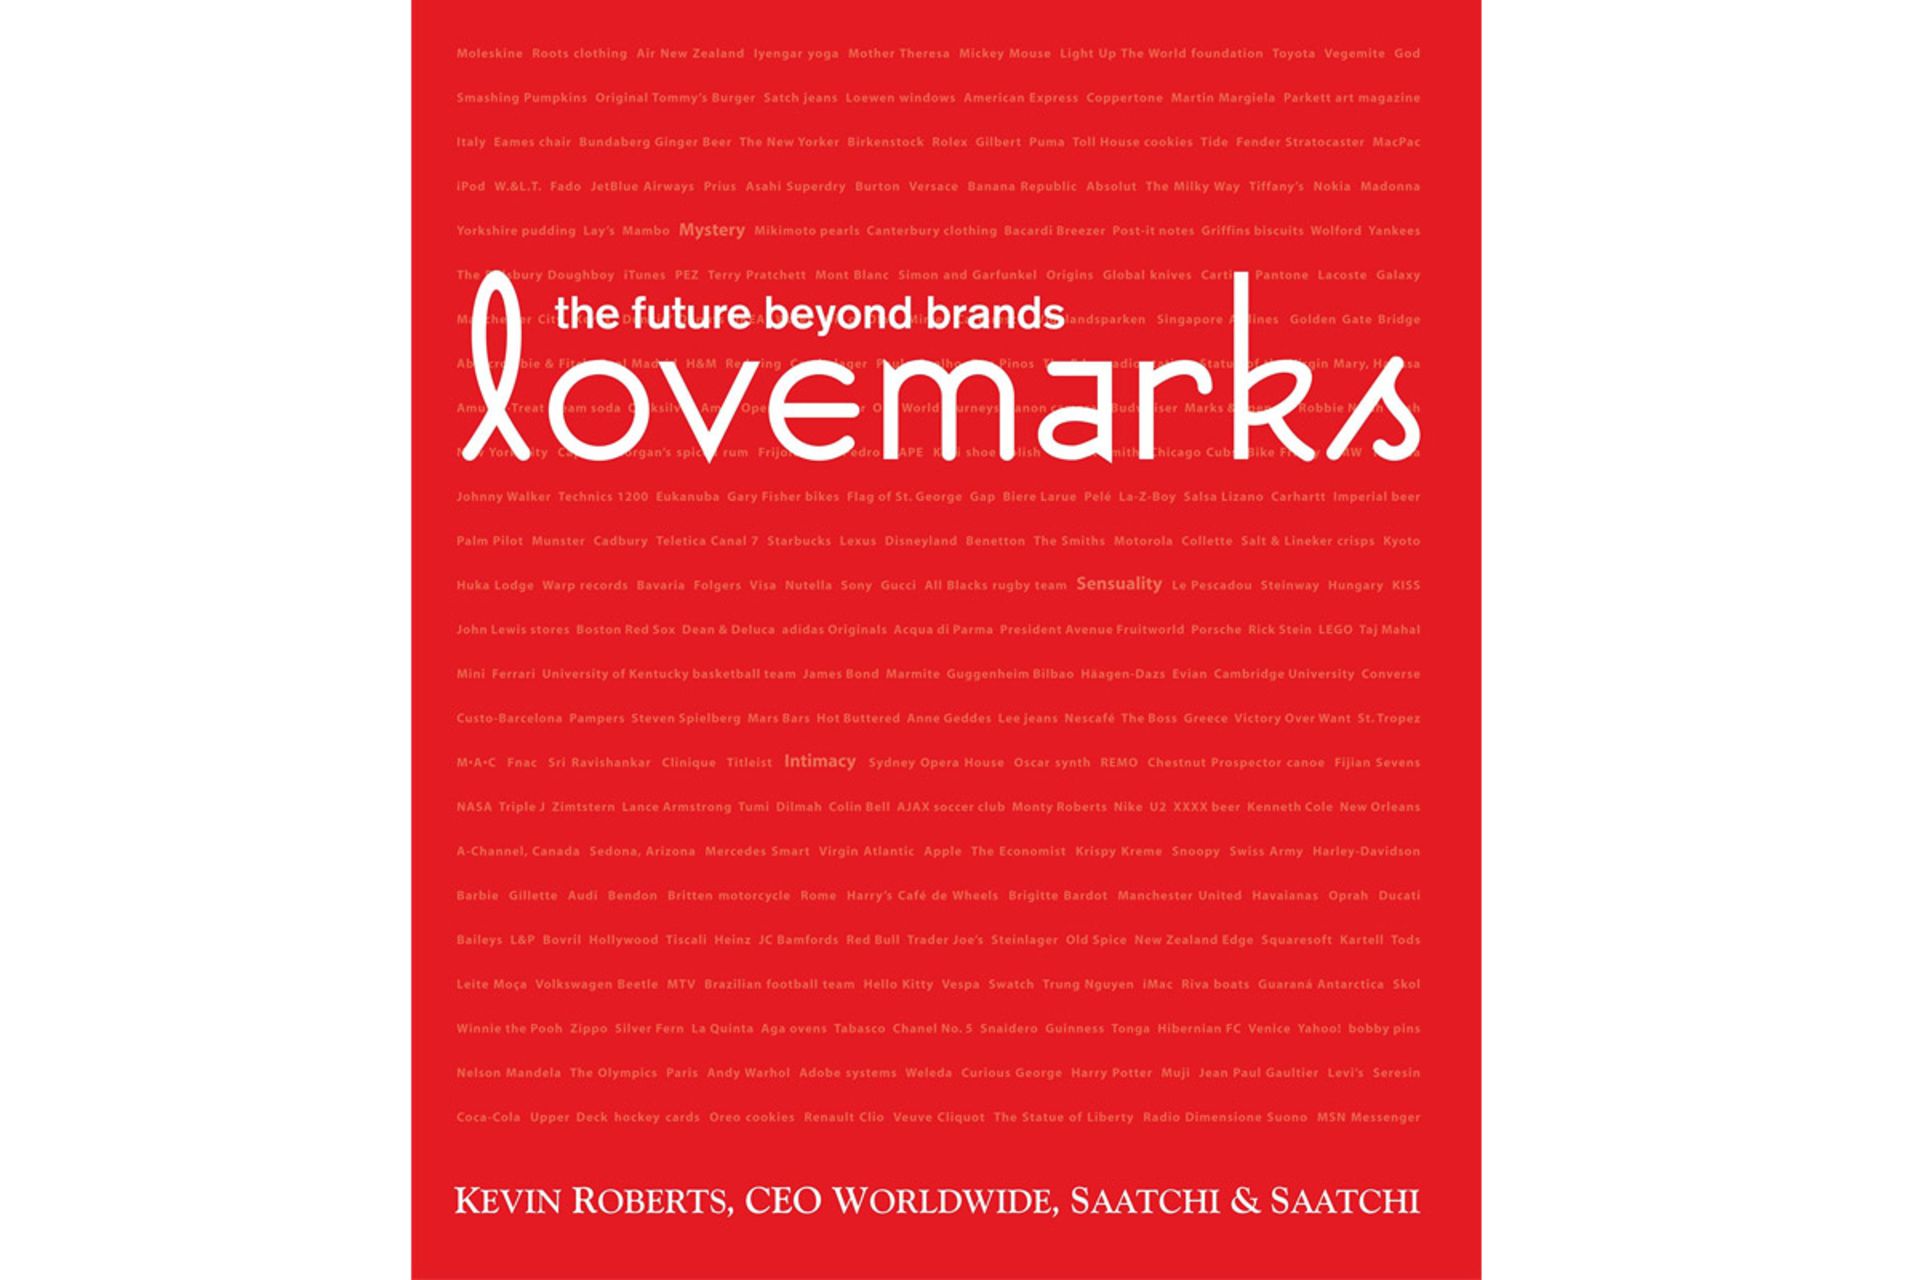 کتاب برند محبوب روبرتز کوین/lovemarks kevin